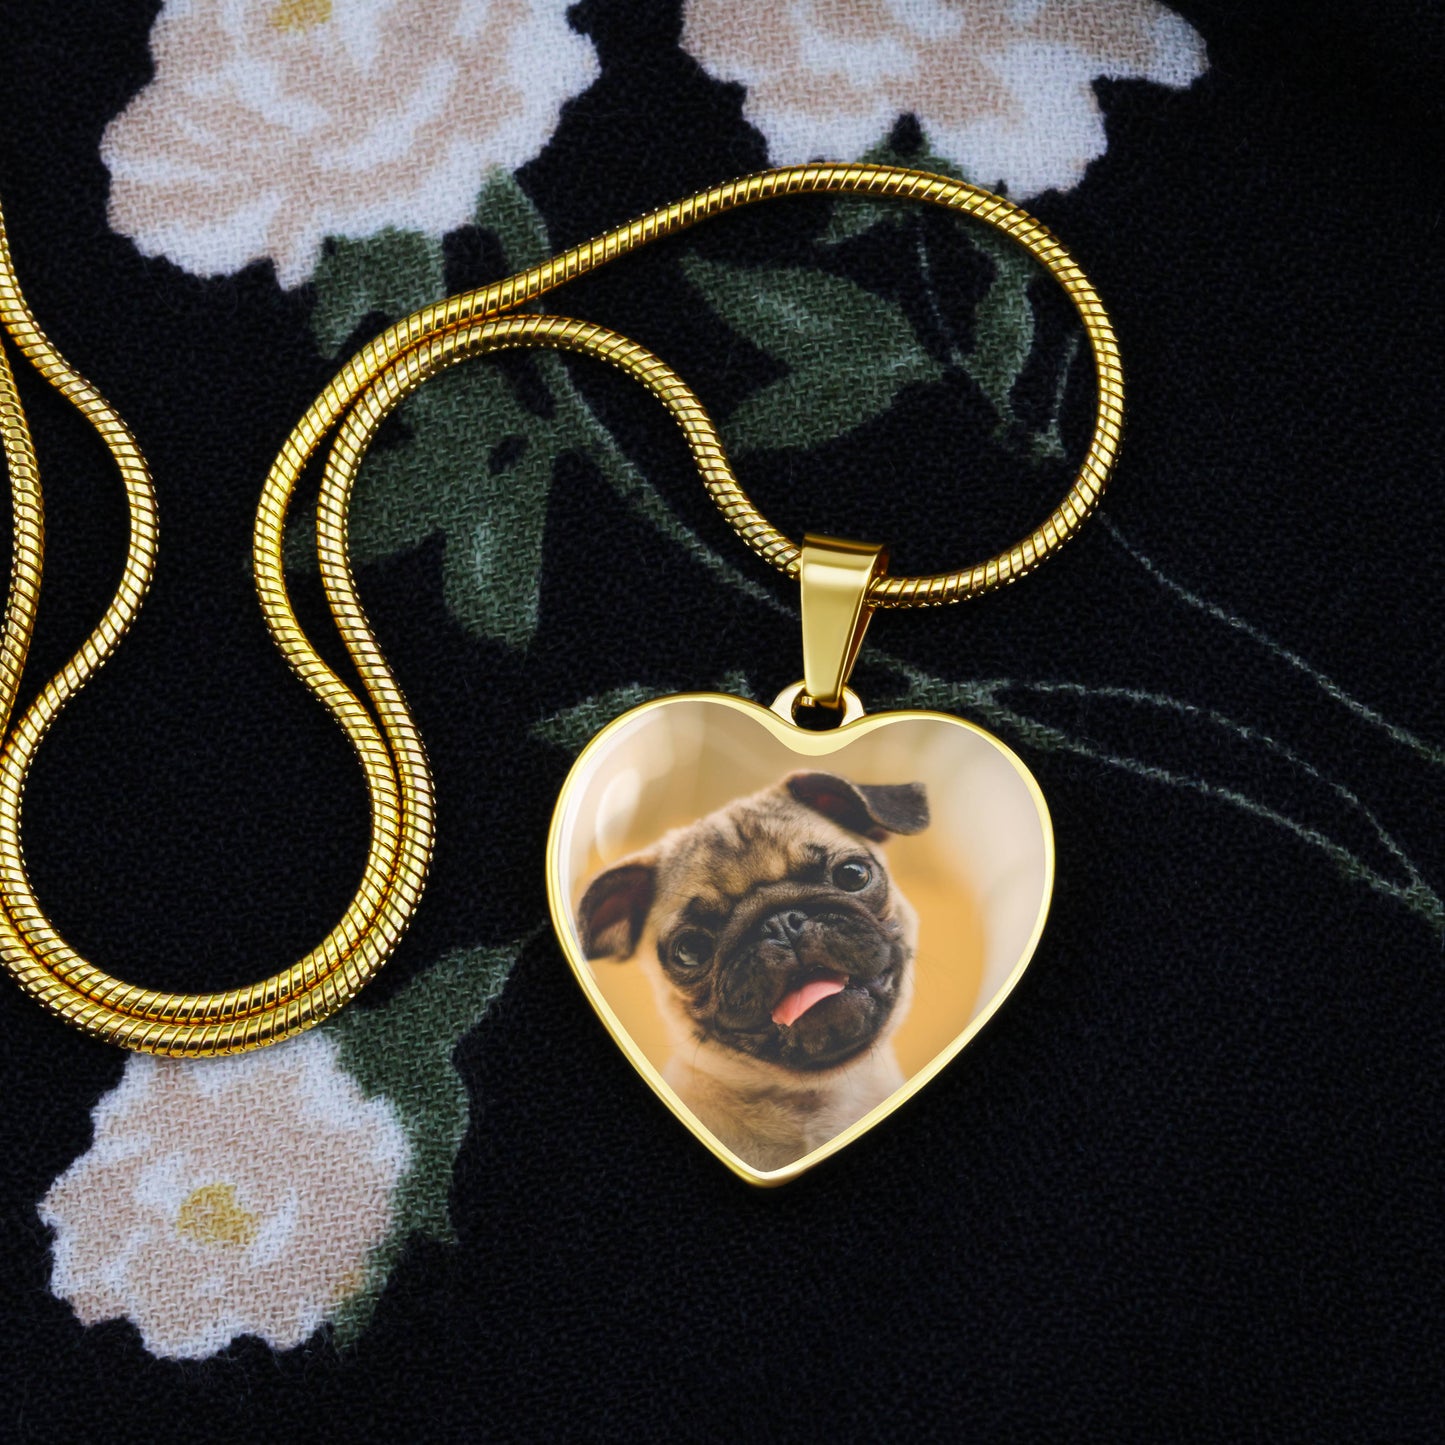 Custom Photo Heart necklace